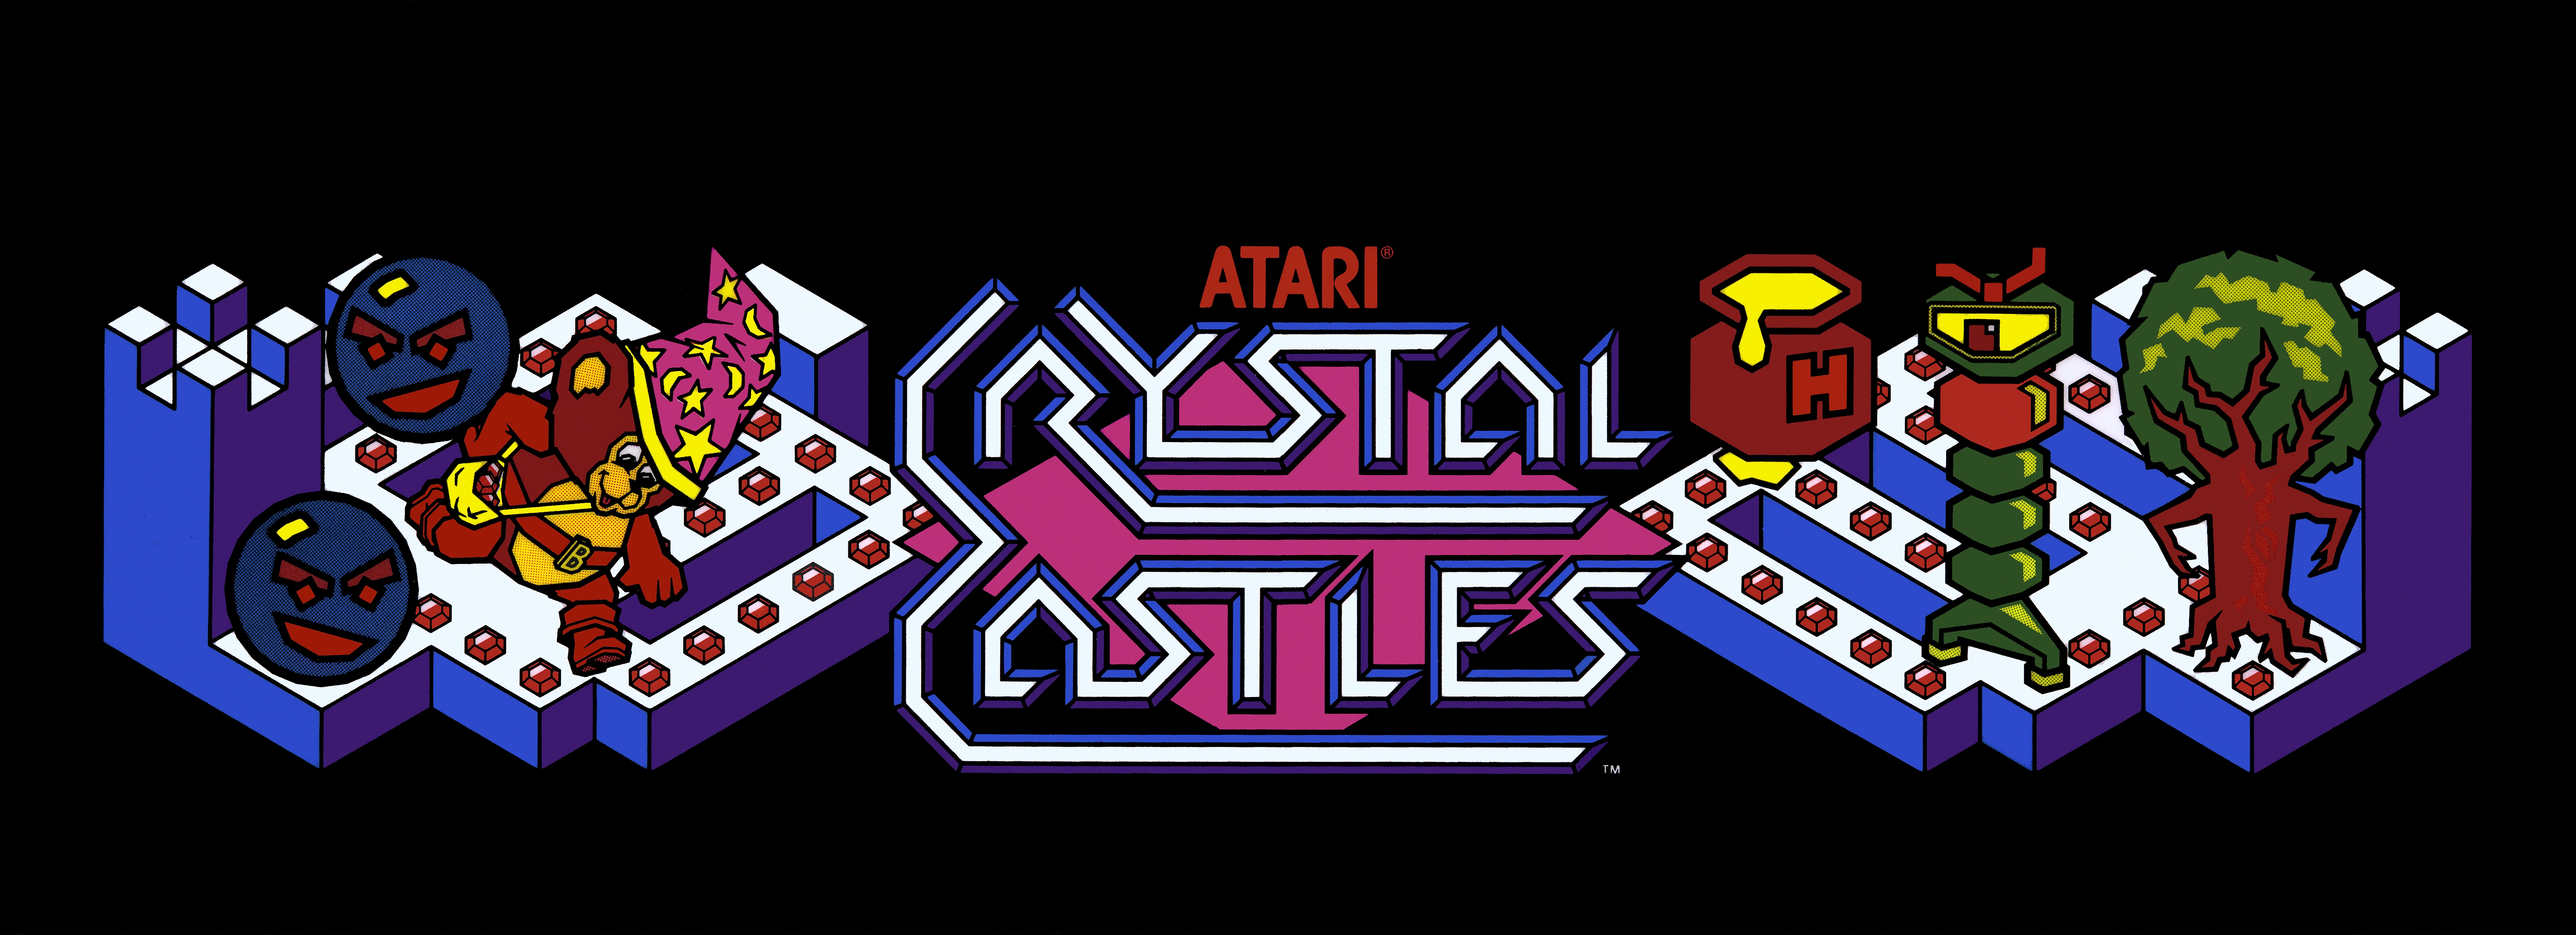 Crystal Castles  4k Wallpaper